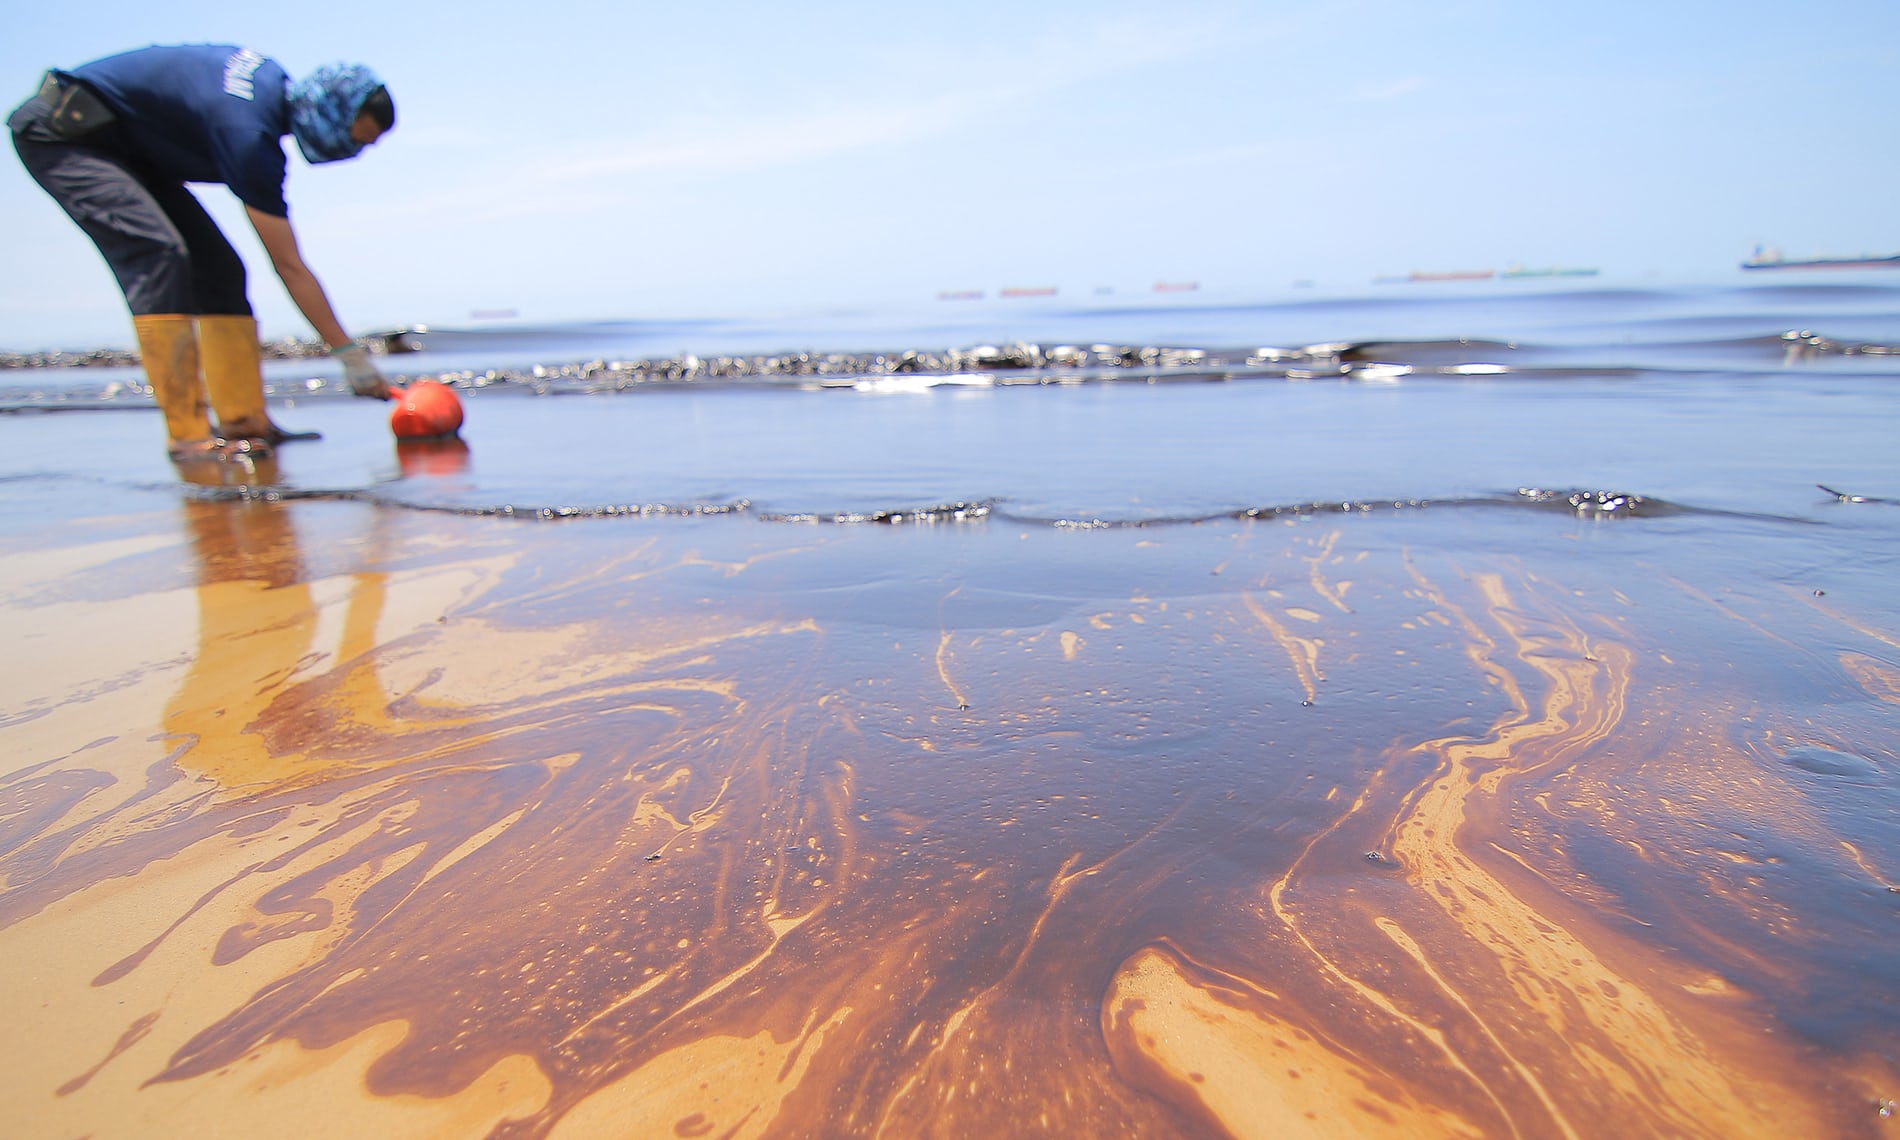 Нефть загрязняет воду. Разлив нефти в Бразилии 2000 г. Загрязнение океана разливы нефти. Разлив нефти в Бразилии Гуанабара. Катастрофа в Бразилии разлив нефти 2000.